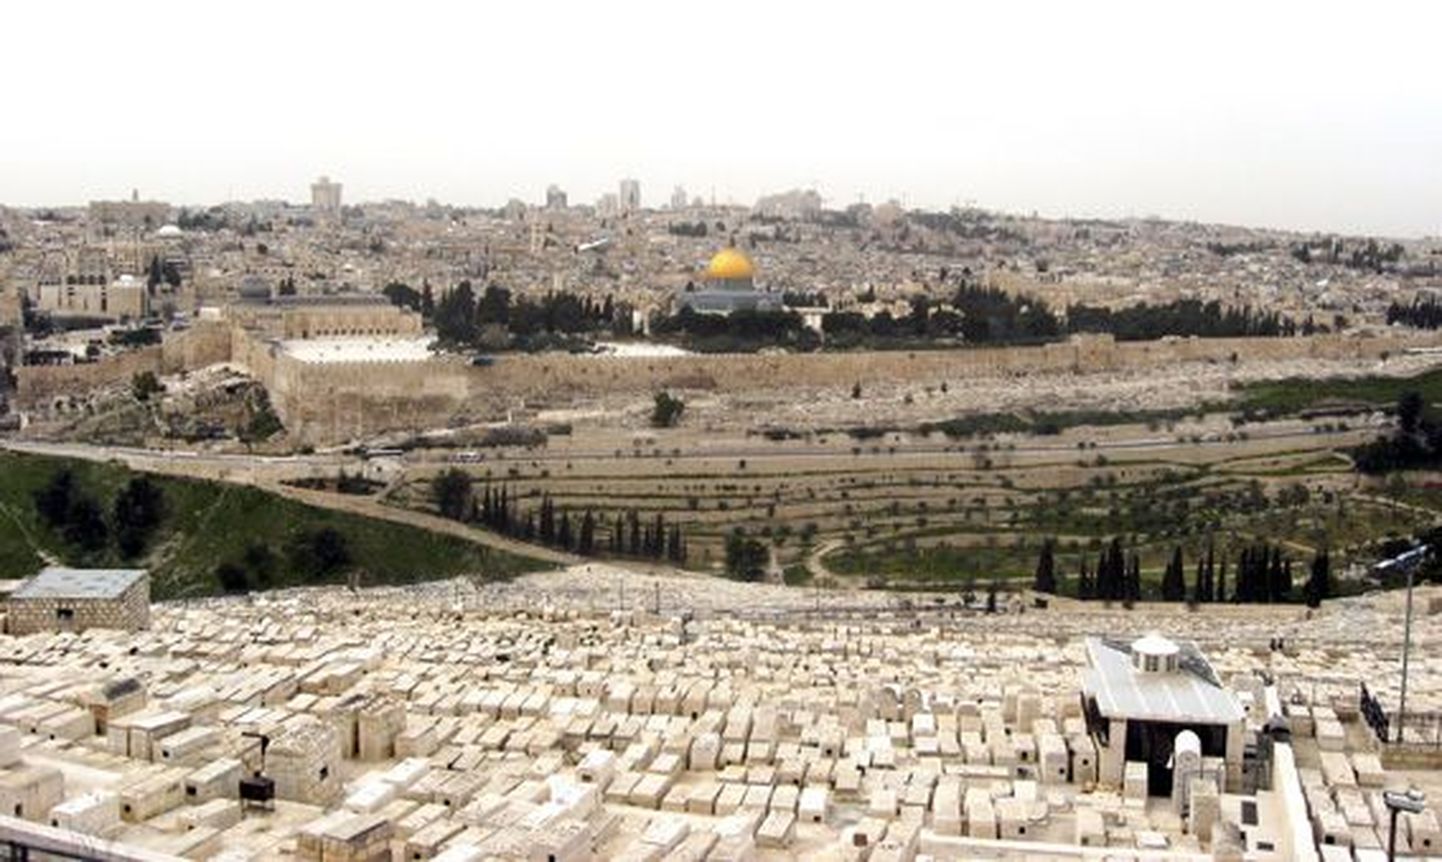 Õlimäelt avaneb vaade Jeruusalemma vanalinnale. Linnamüüride ette jääb valgete kivikrüptidega iidne kalmistu.